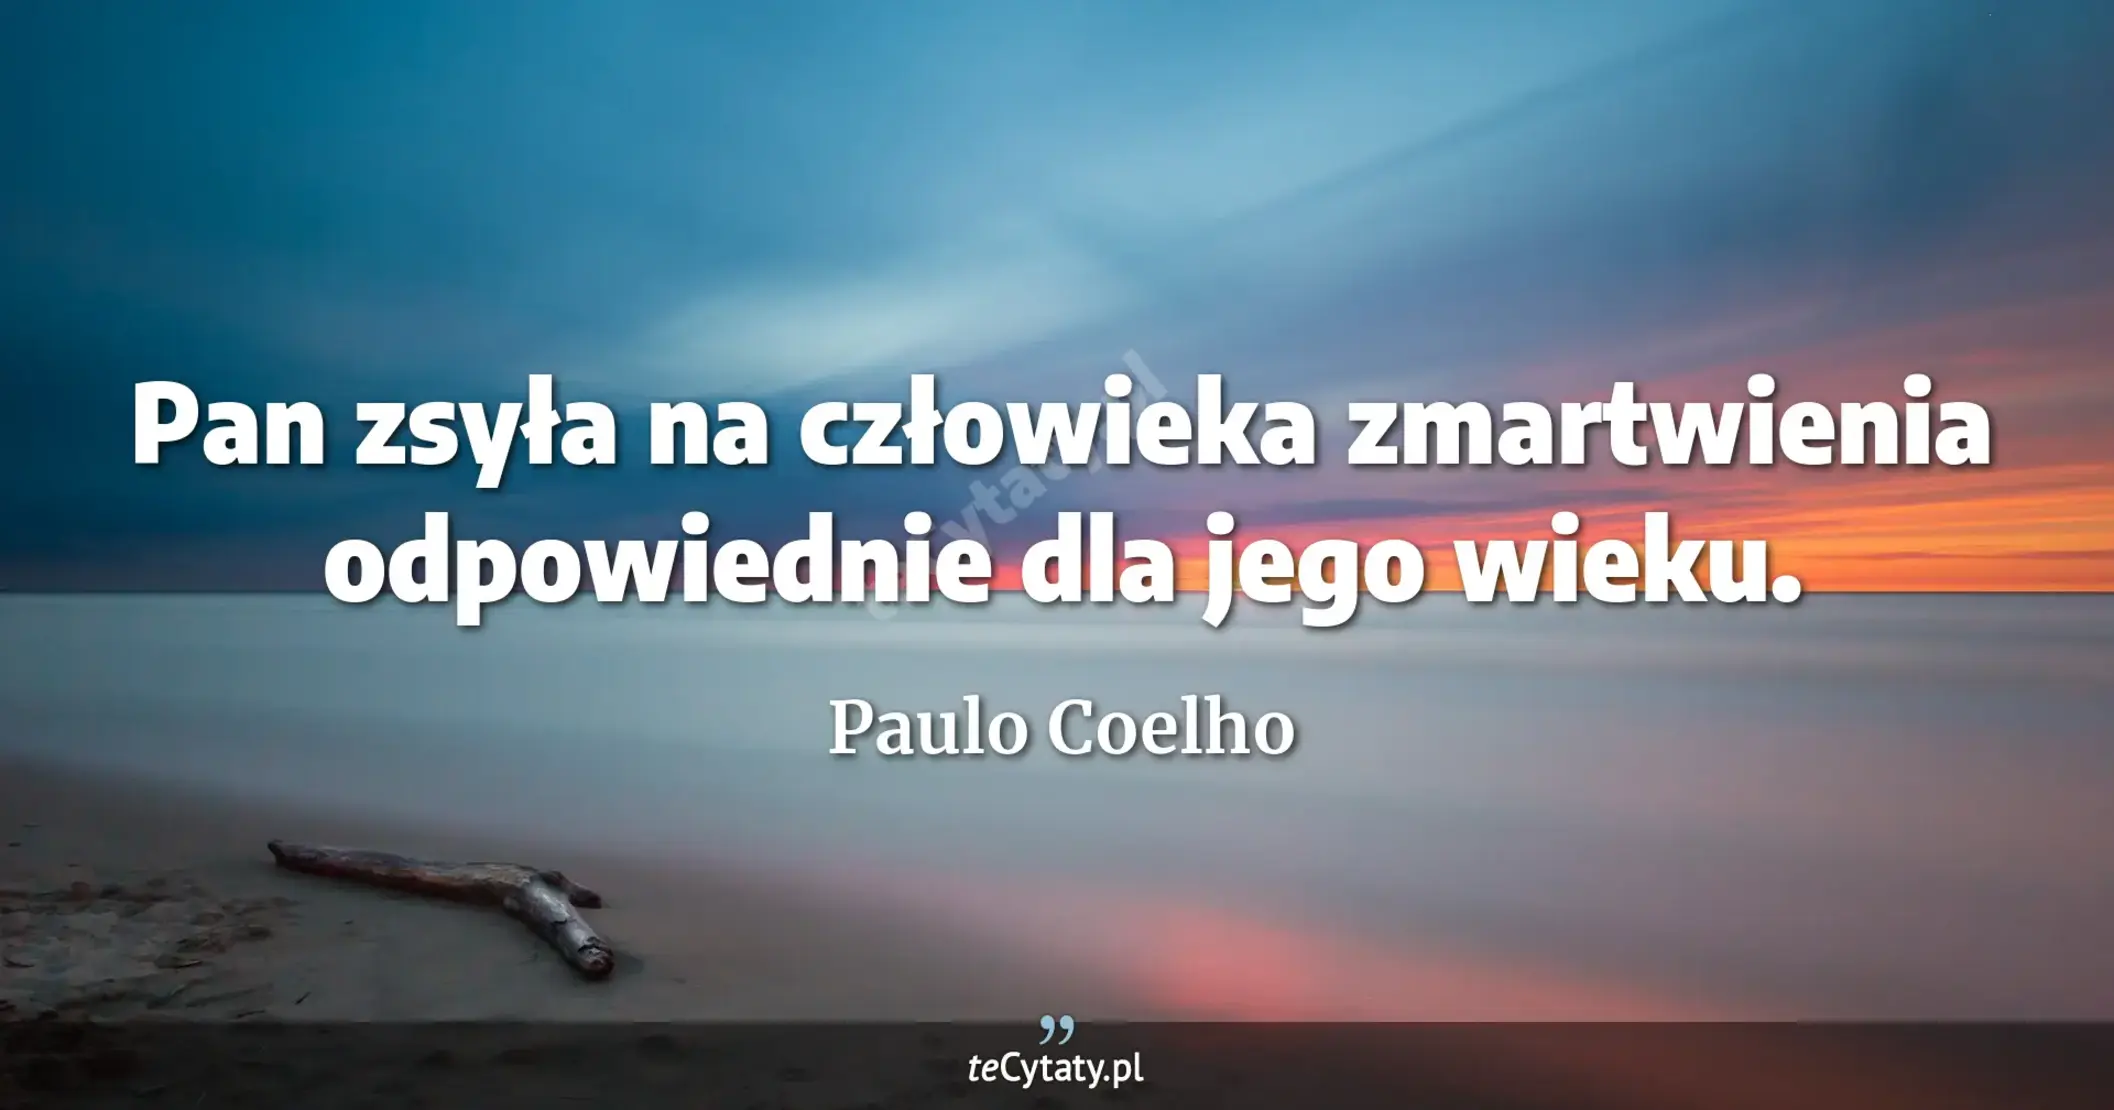 Pan zsyła na człowieka zmartwienia odpowiednie dla jego wieku. - Paulo Coelho